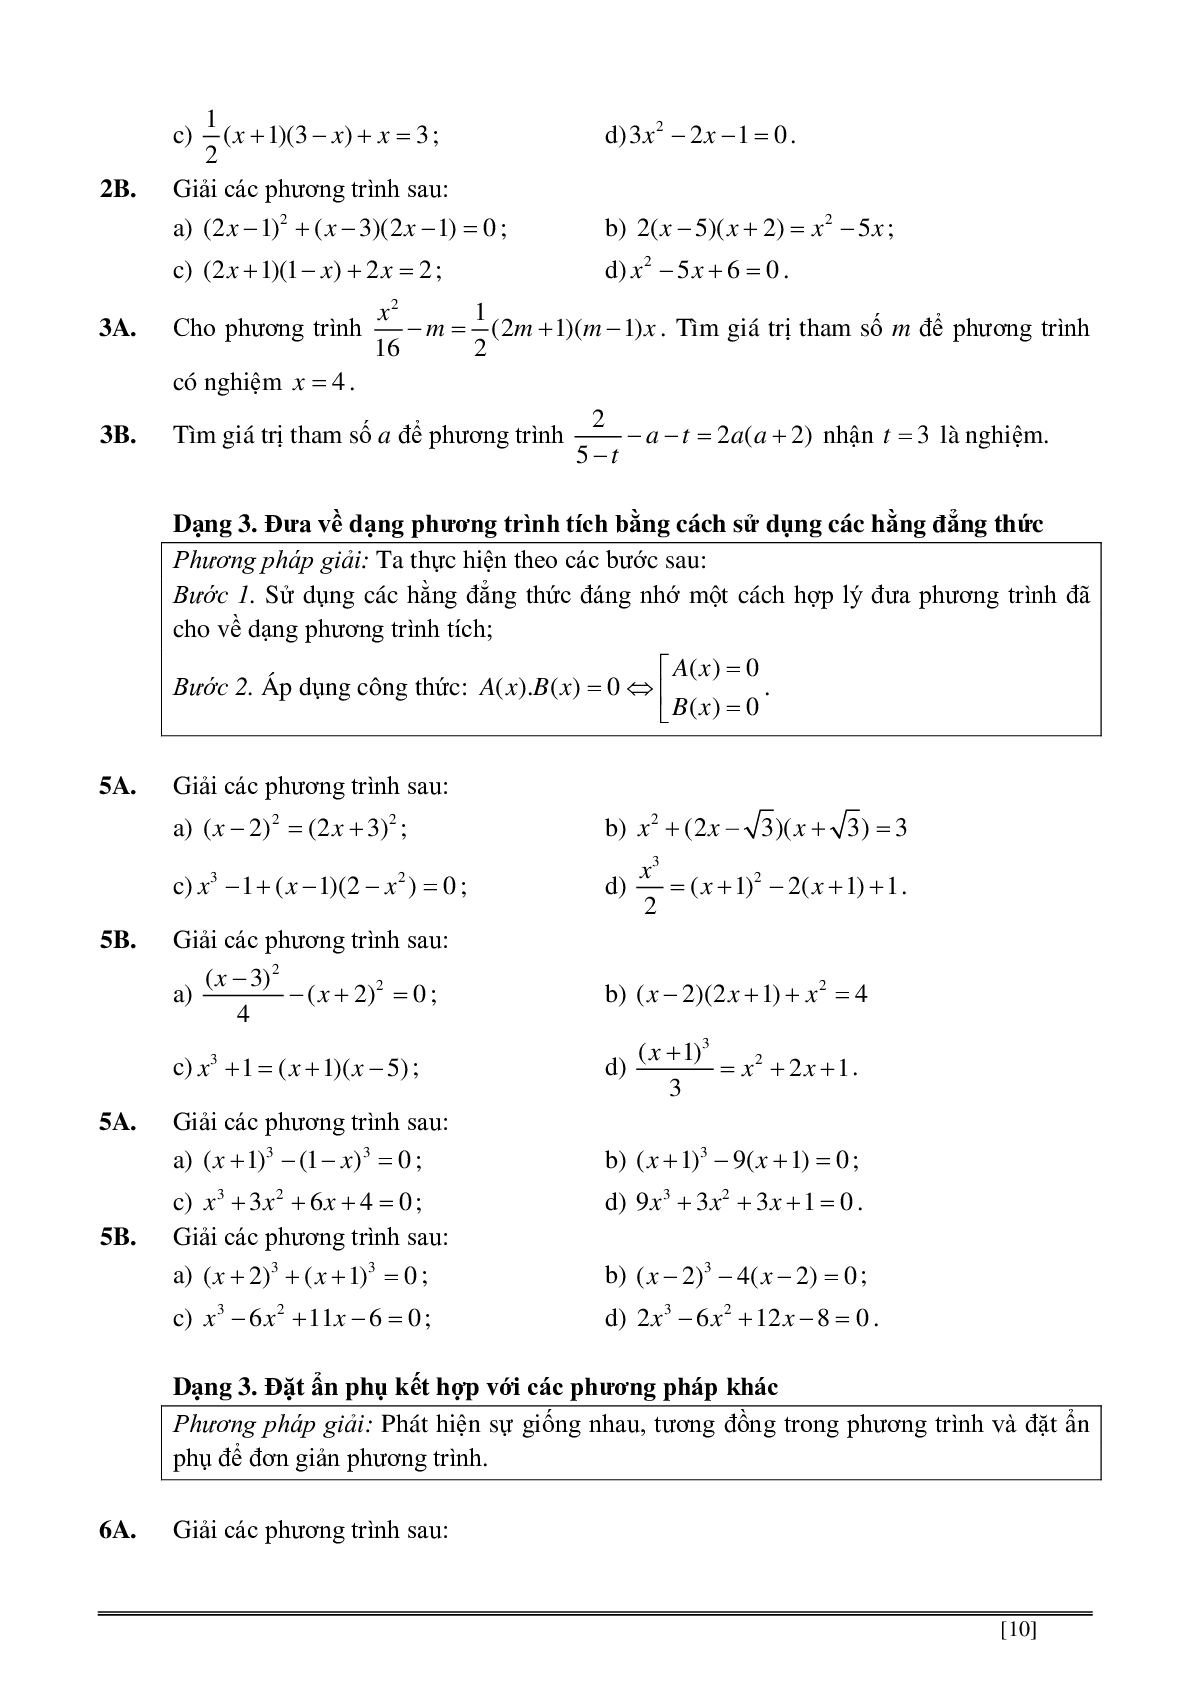 Củng cố và ôn luyện toán 8 kì 2 trang 139-186 (trang 10)